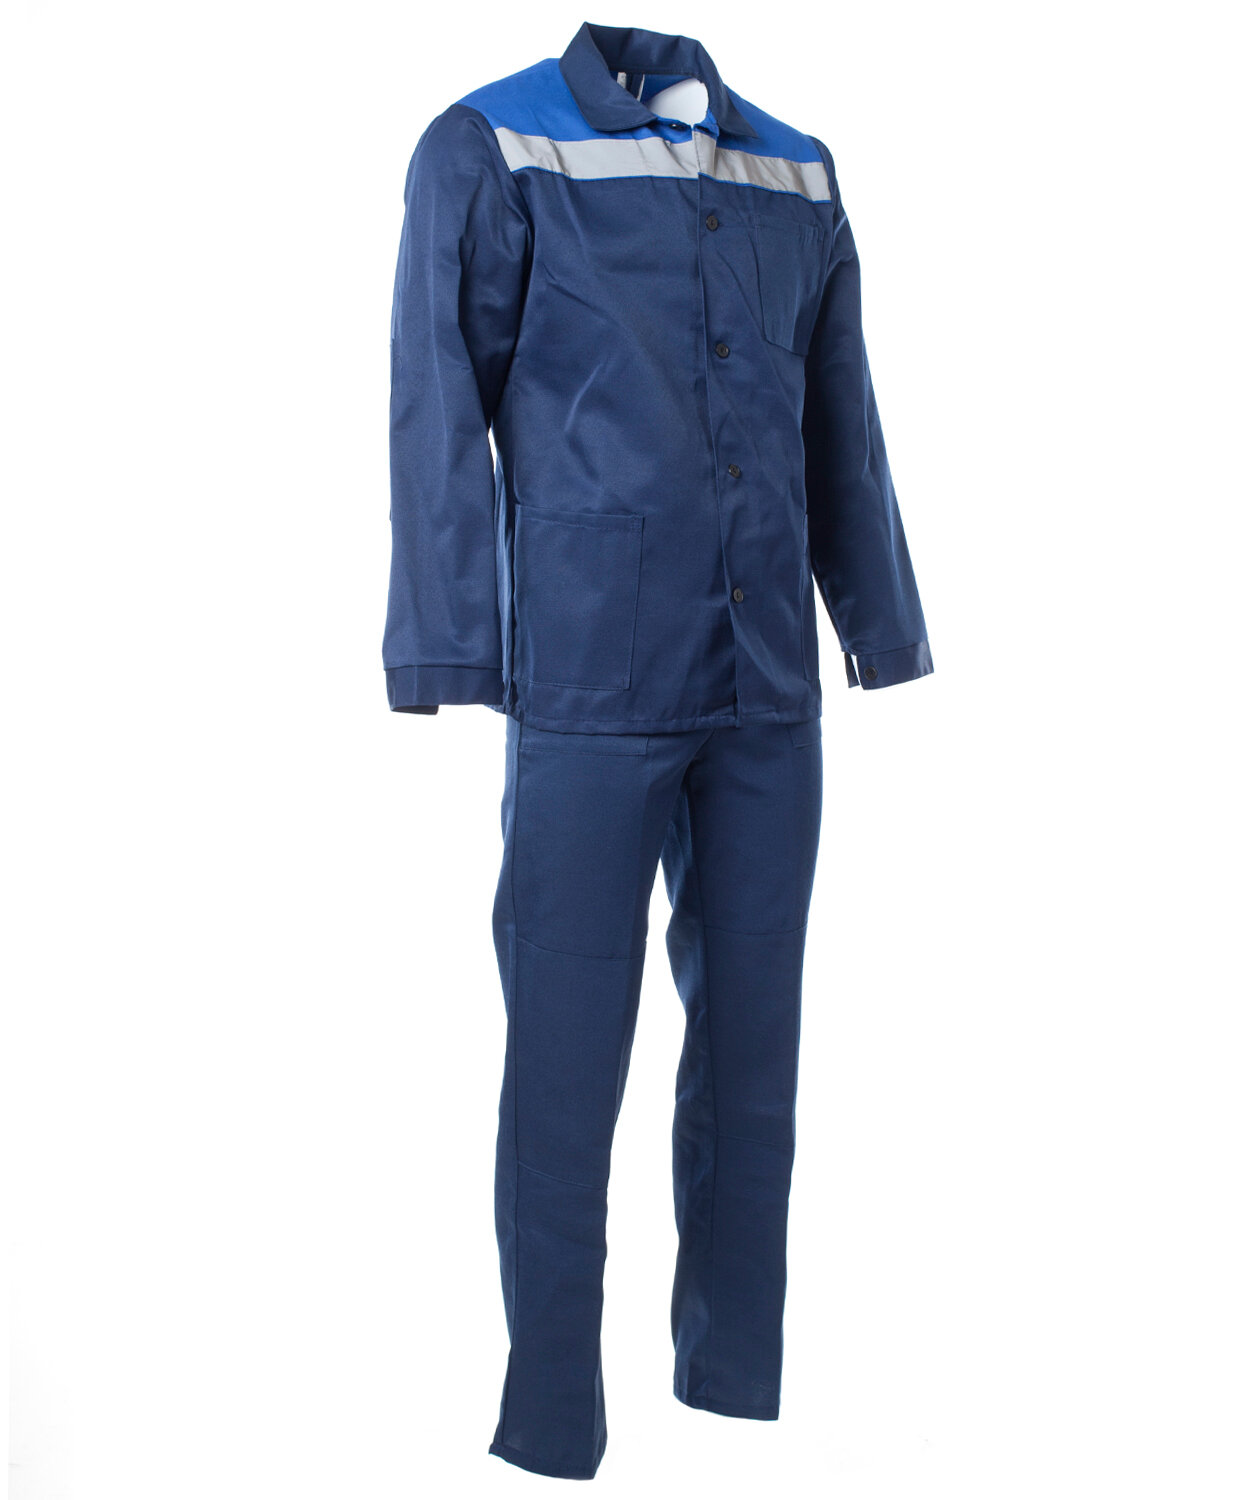 Костюм мужской «Стандарт» с СОП куртка, брюки цвет: т. синий, васильковый (56-58)112-116, 170-176